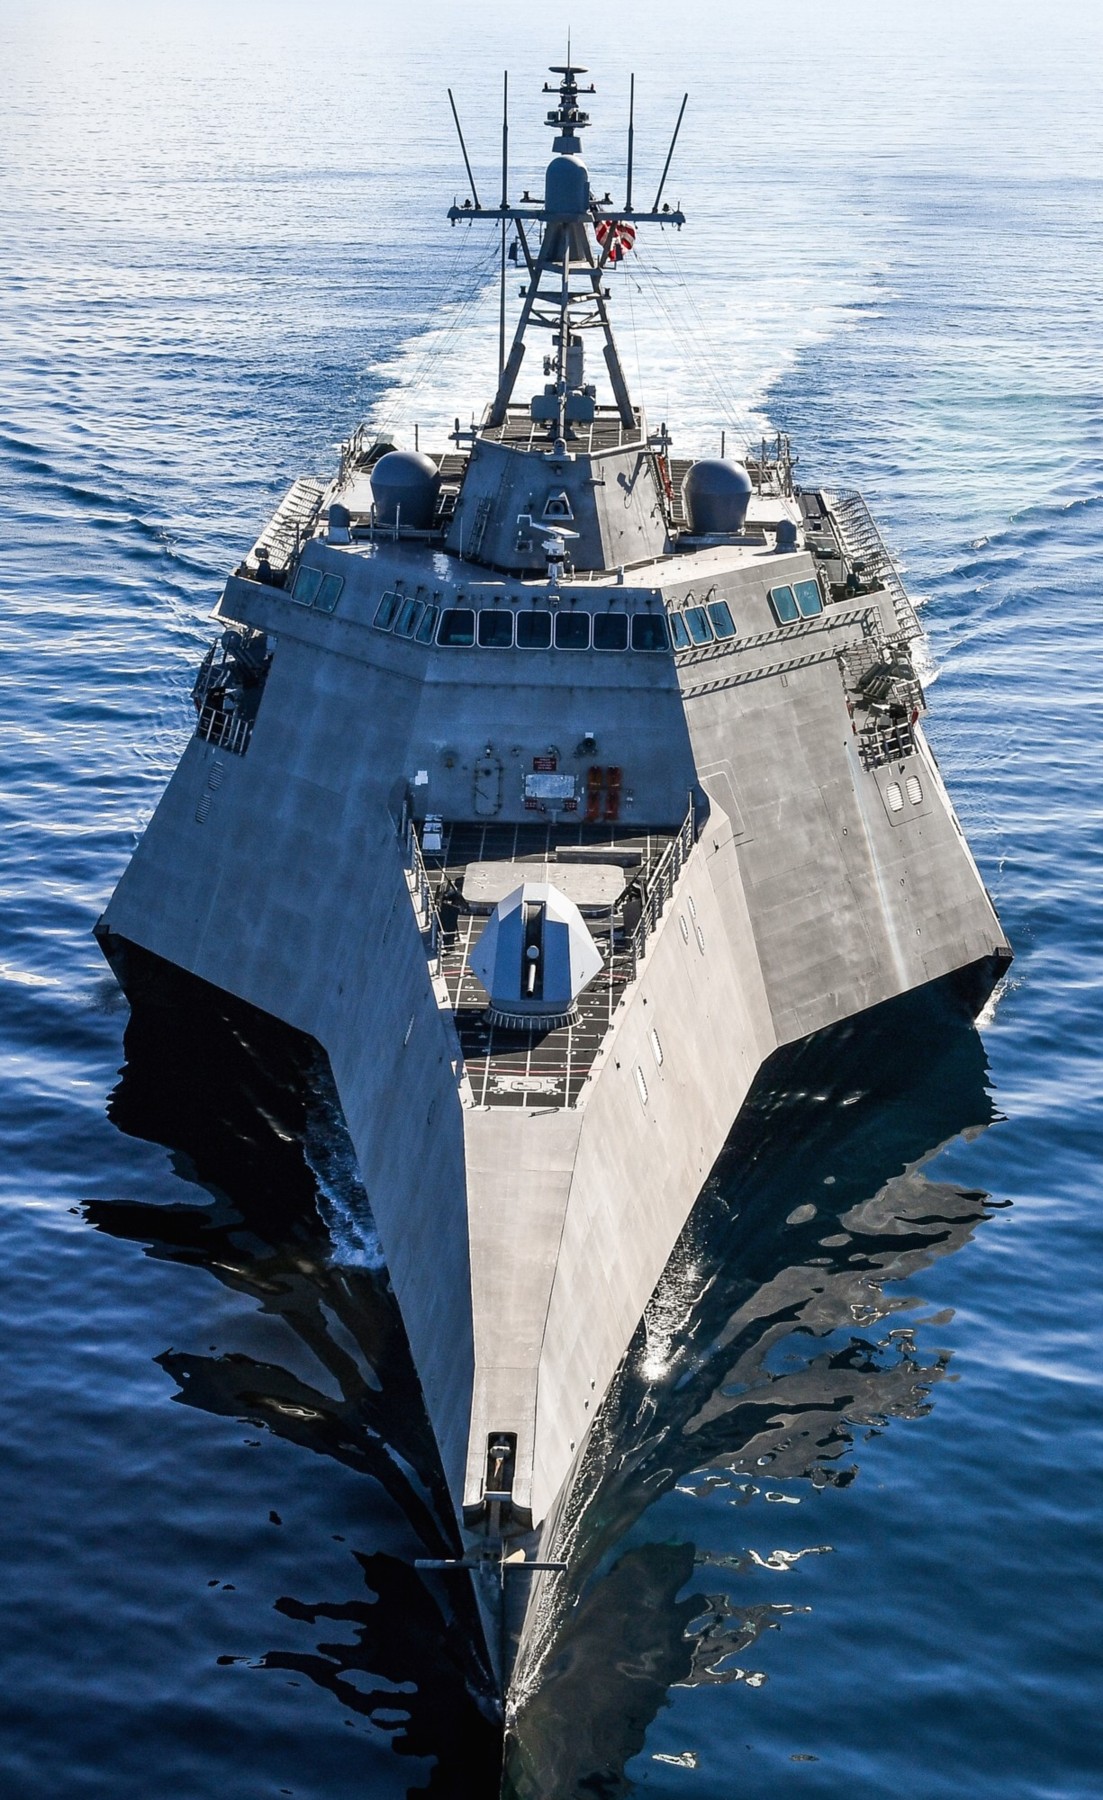 lcs-16 uss tulsa independence class littoral combat ship us navy 20